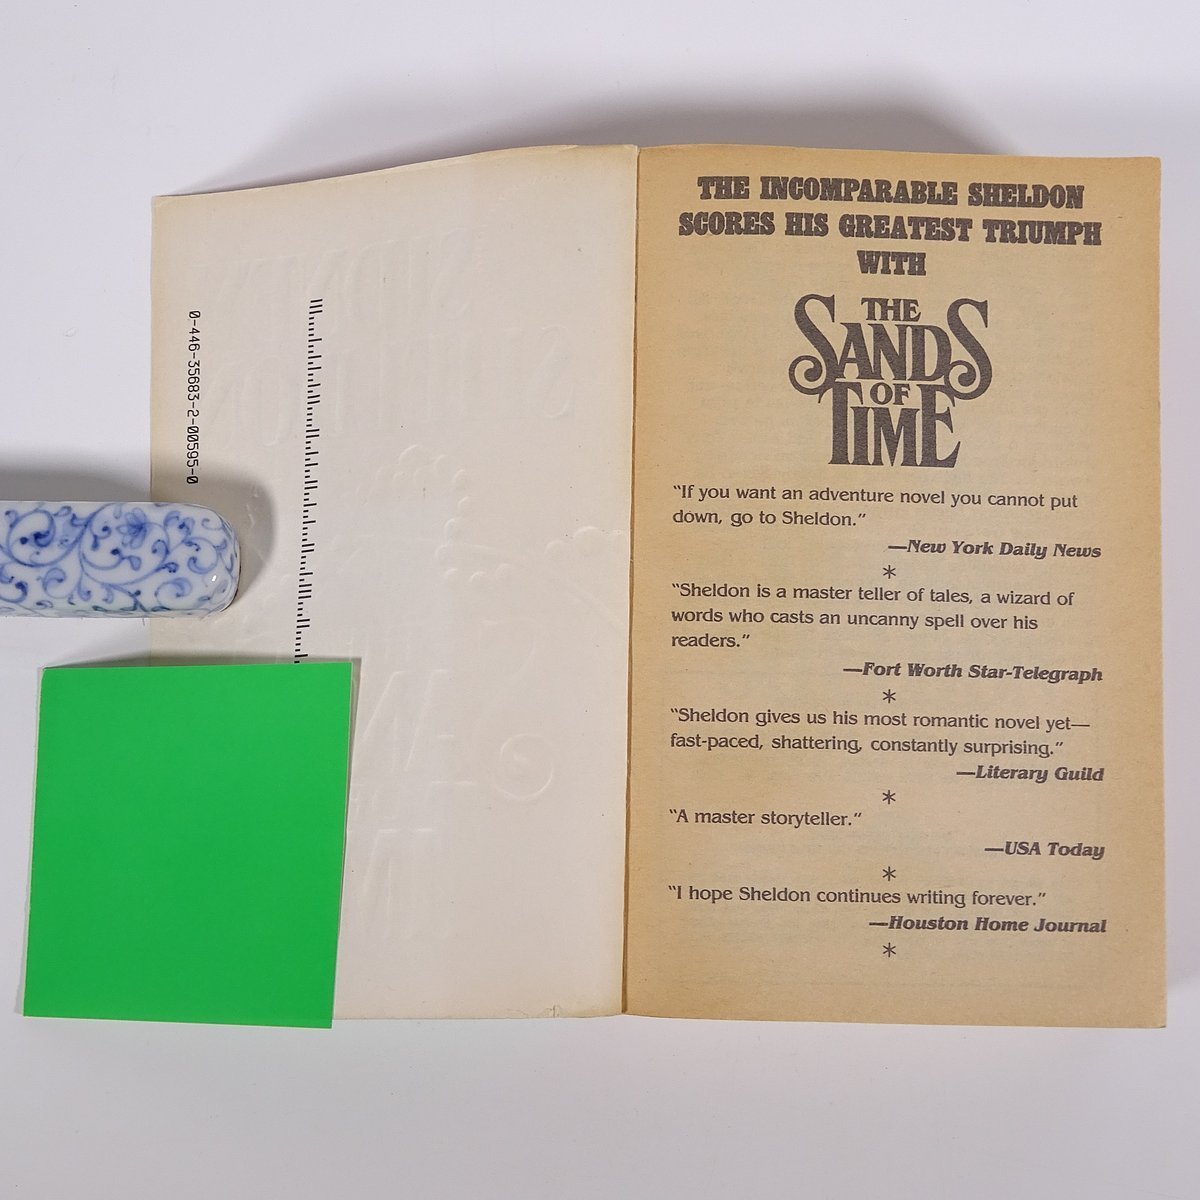 【英語洋書】 THE SANDS OF TIME 時間の砂 Sidney Sheldon シドニィ・シェルダン著 1989 単行本 ペーパーバック  文学 文芸 海外小説